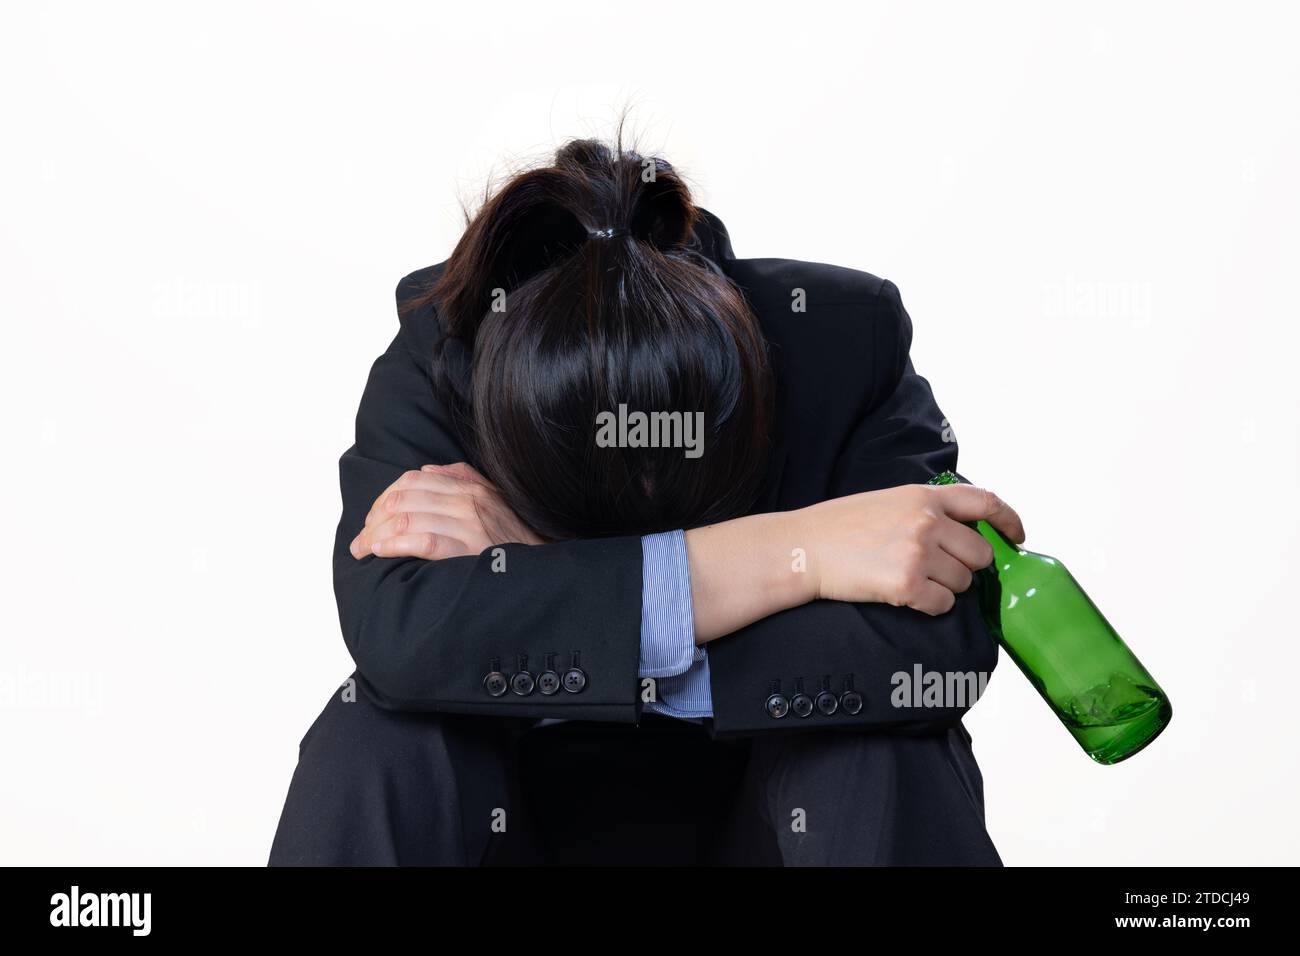 Eine verzweifelte Frau, die eine Flasche Alkohol mit dem Kopf nach unten vor einem weißen Hintergrund hält Stockfoto